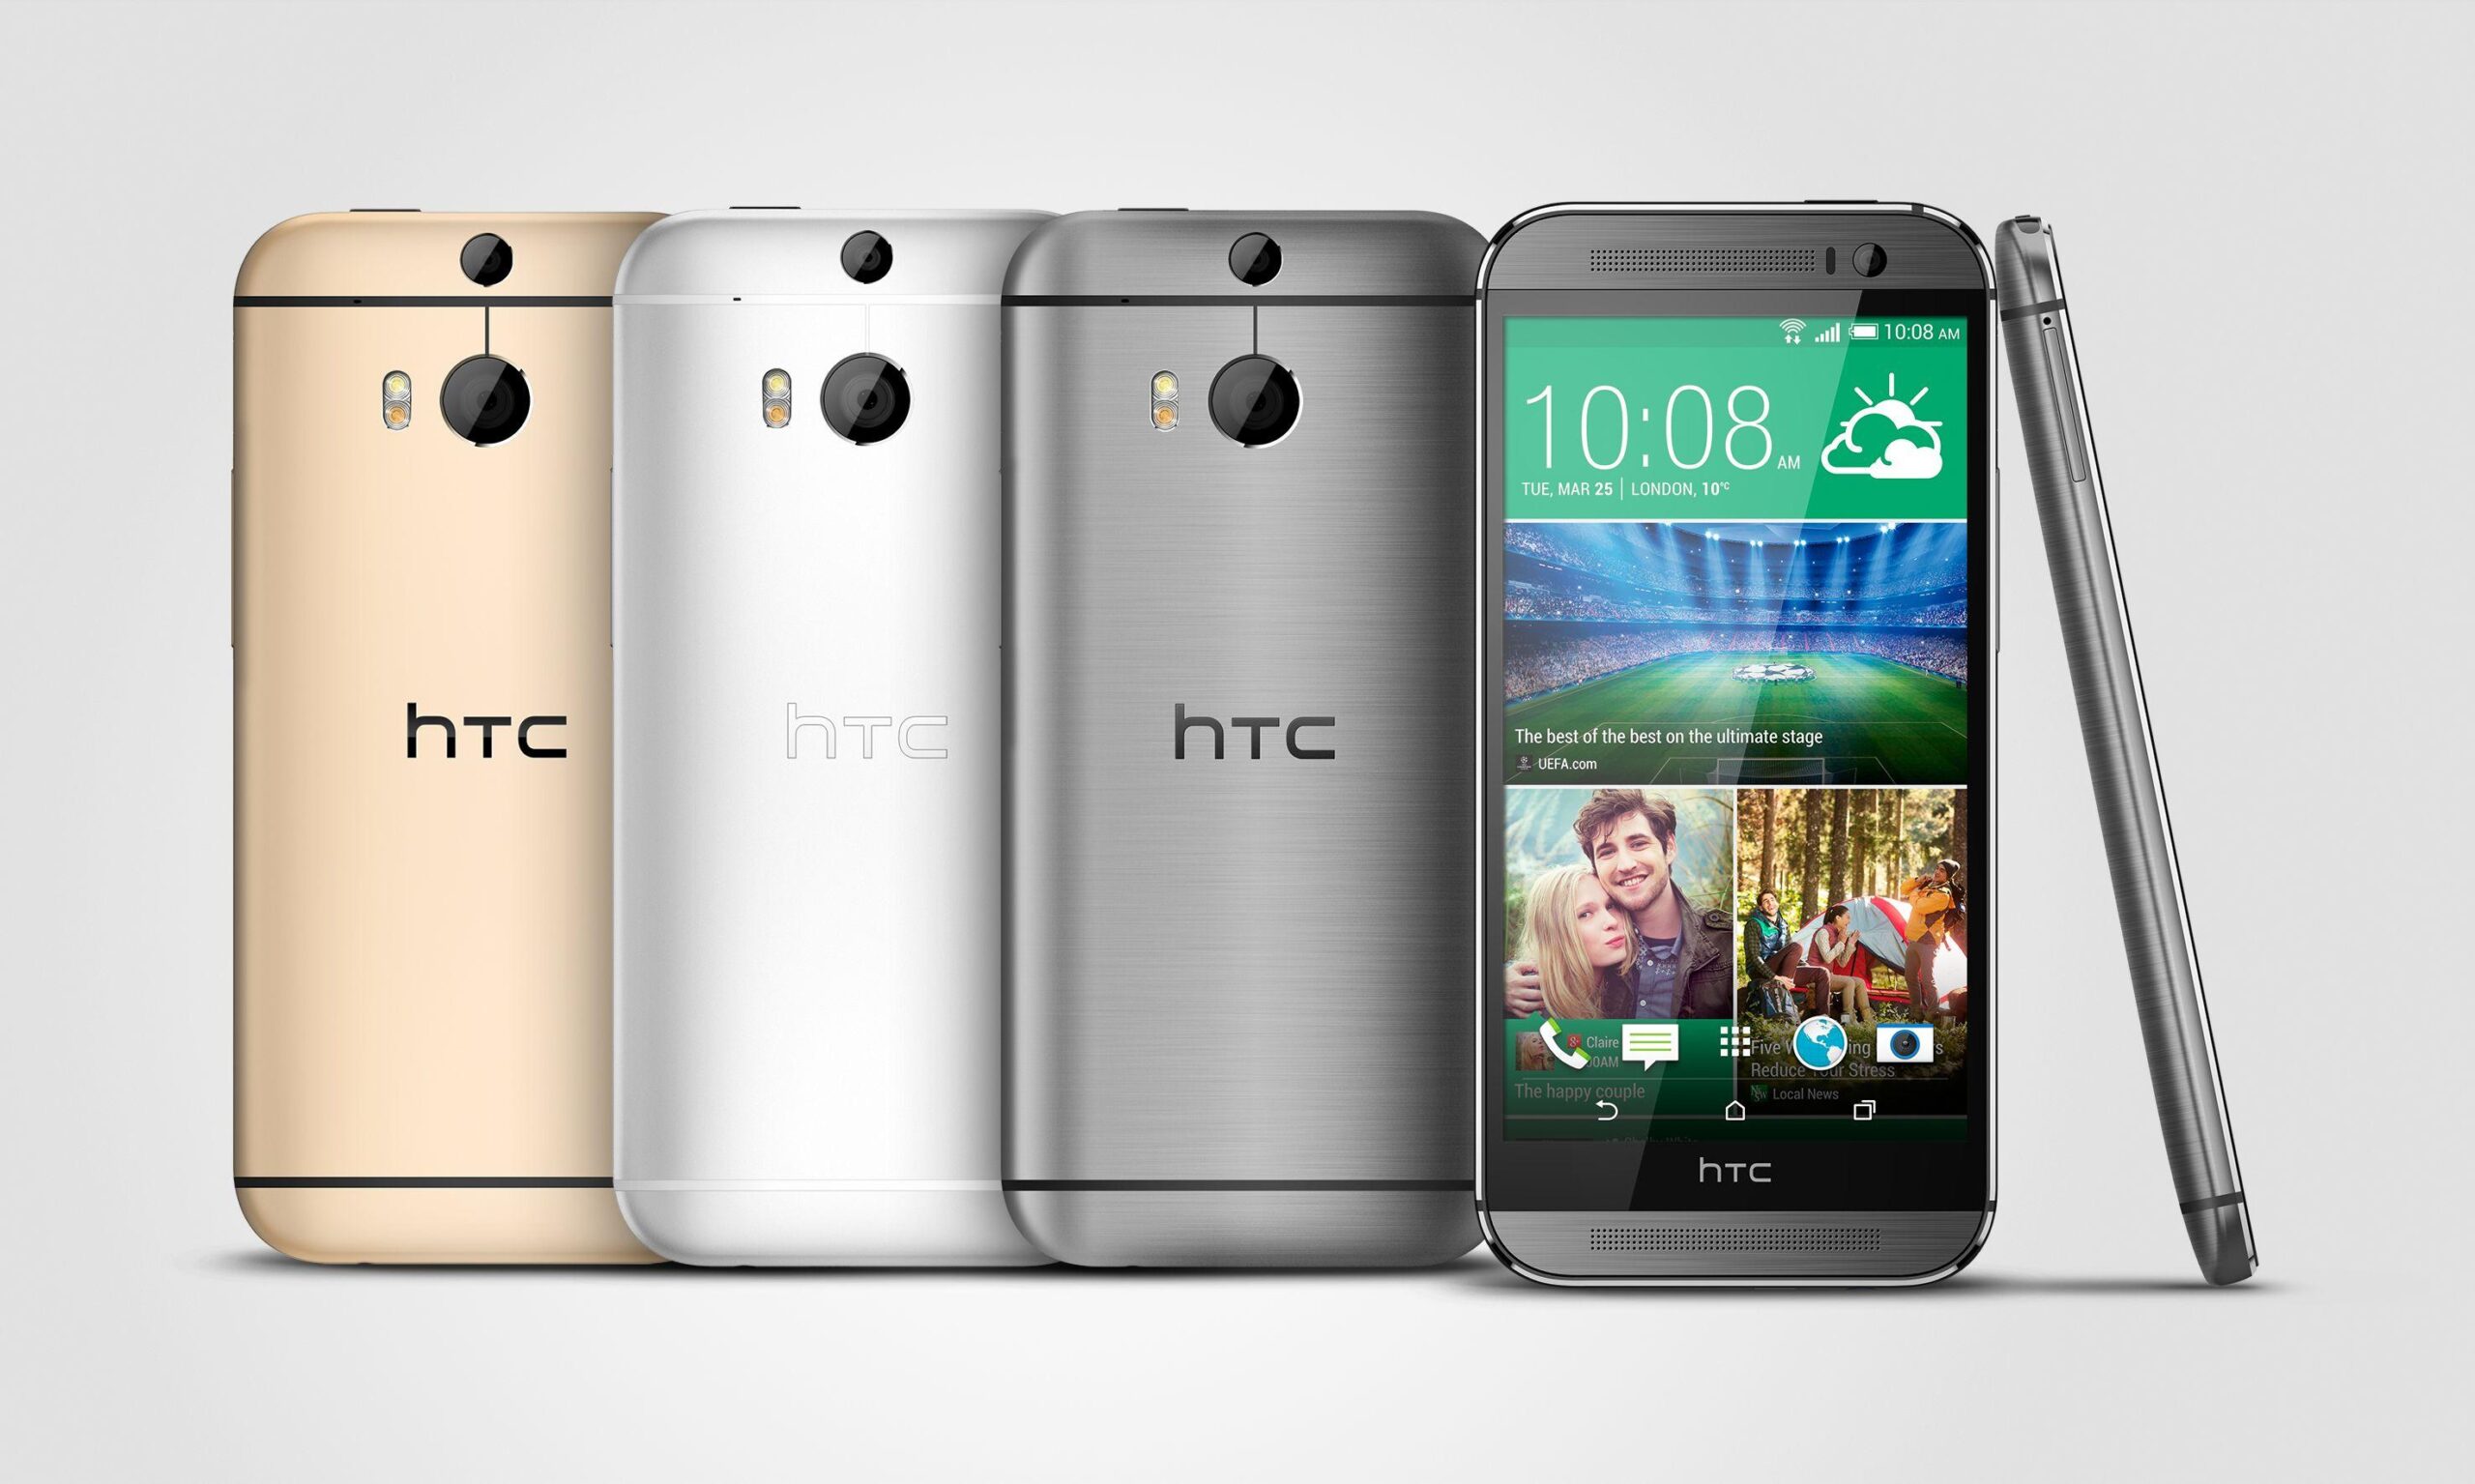 Effettuare il root di HTC One M8